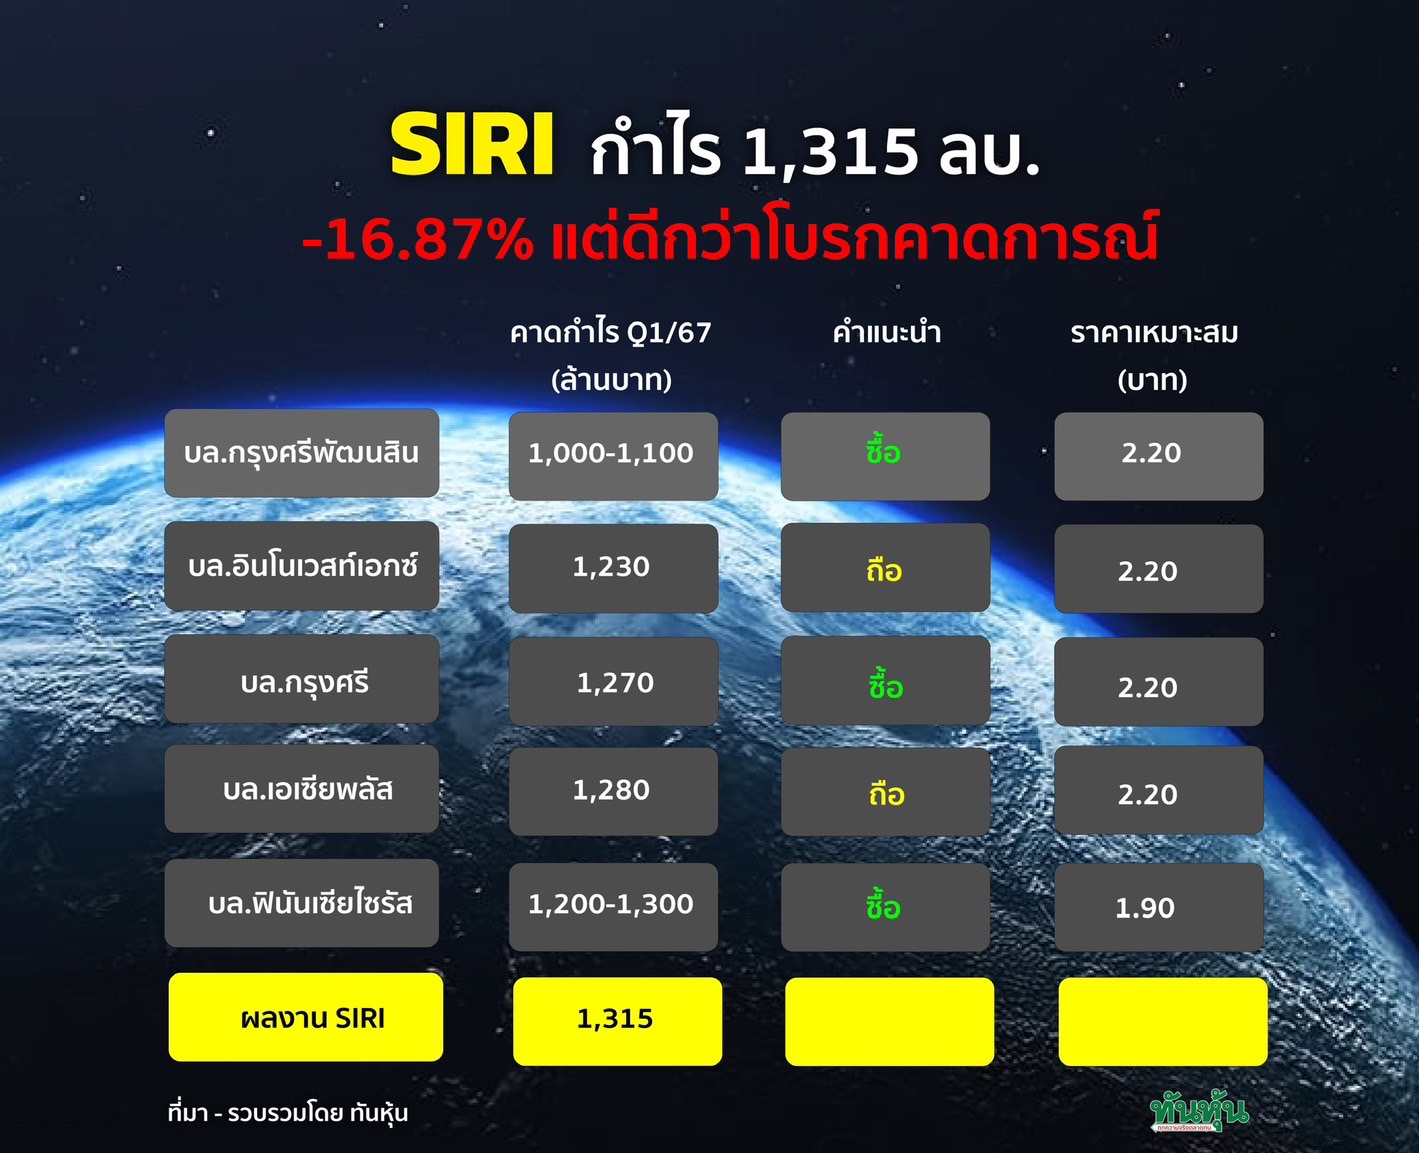 SIRI กำไร 1,315 ลบ. -16.87% แต่ดีกว่าโบรกคาดการณ์